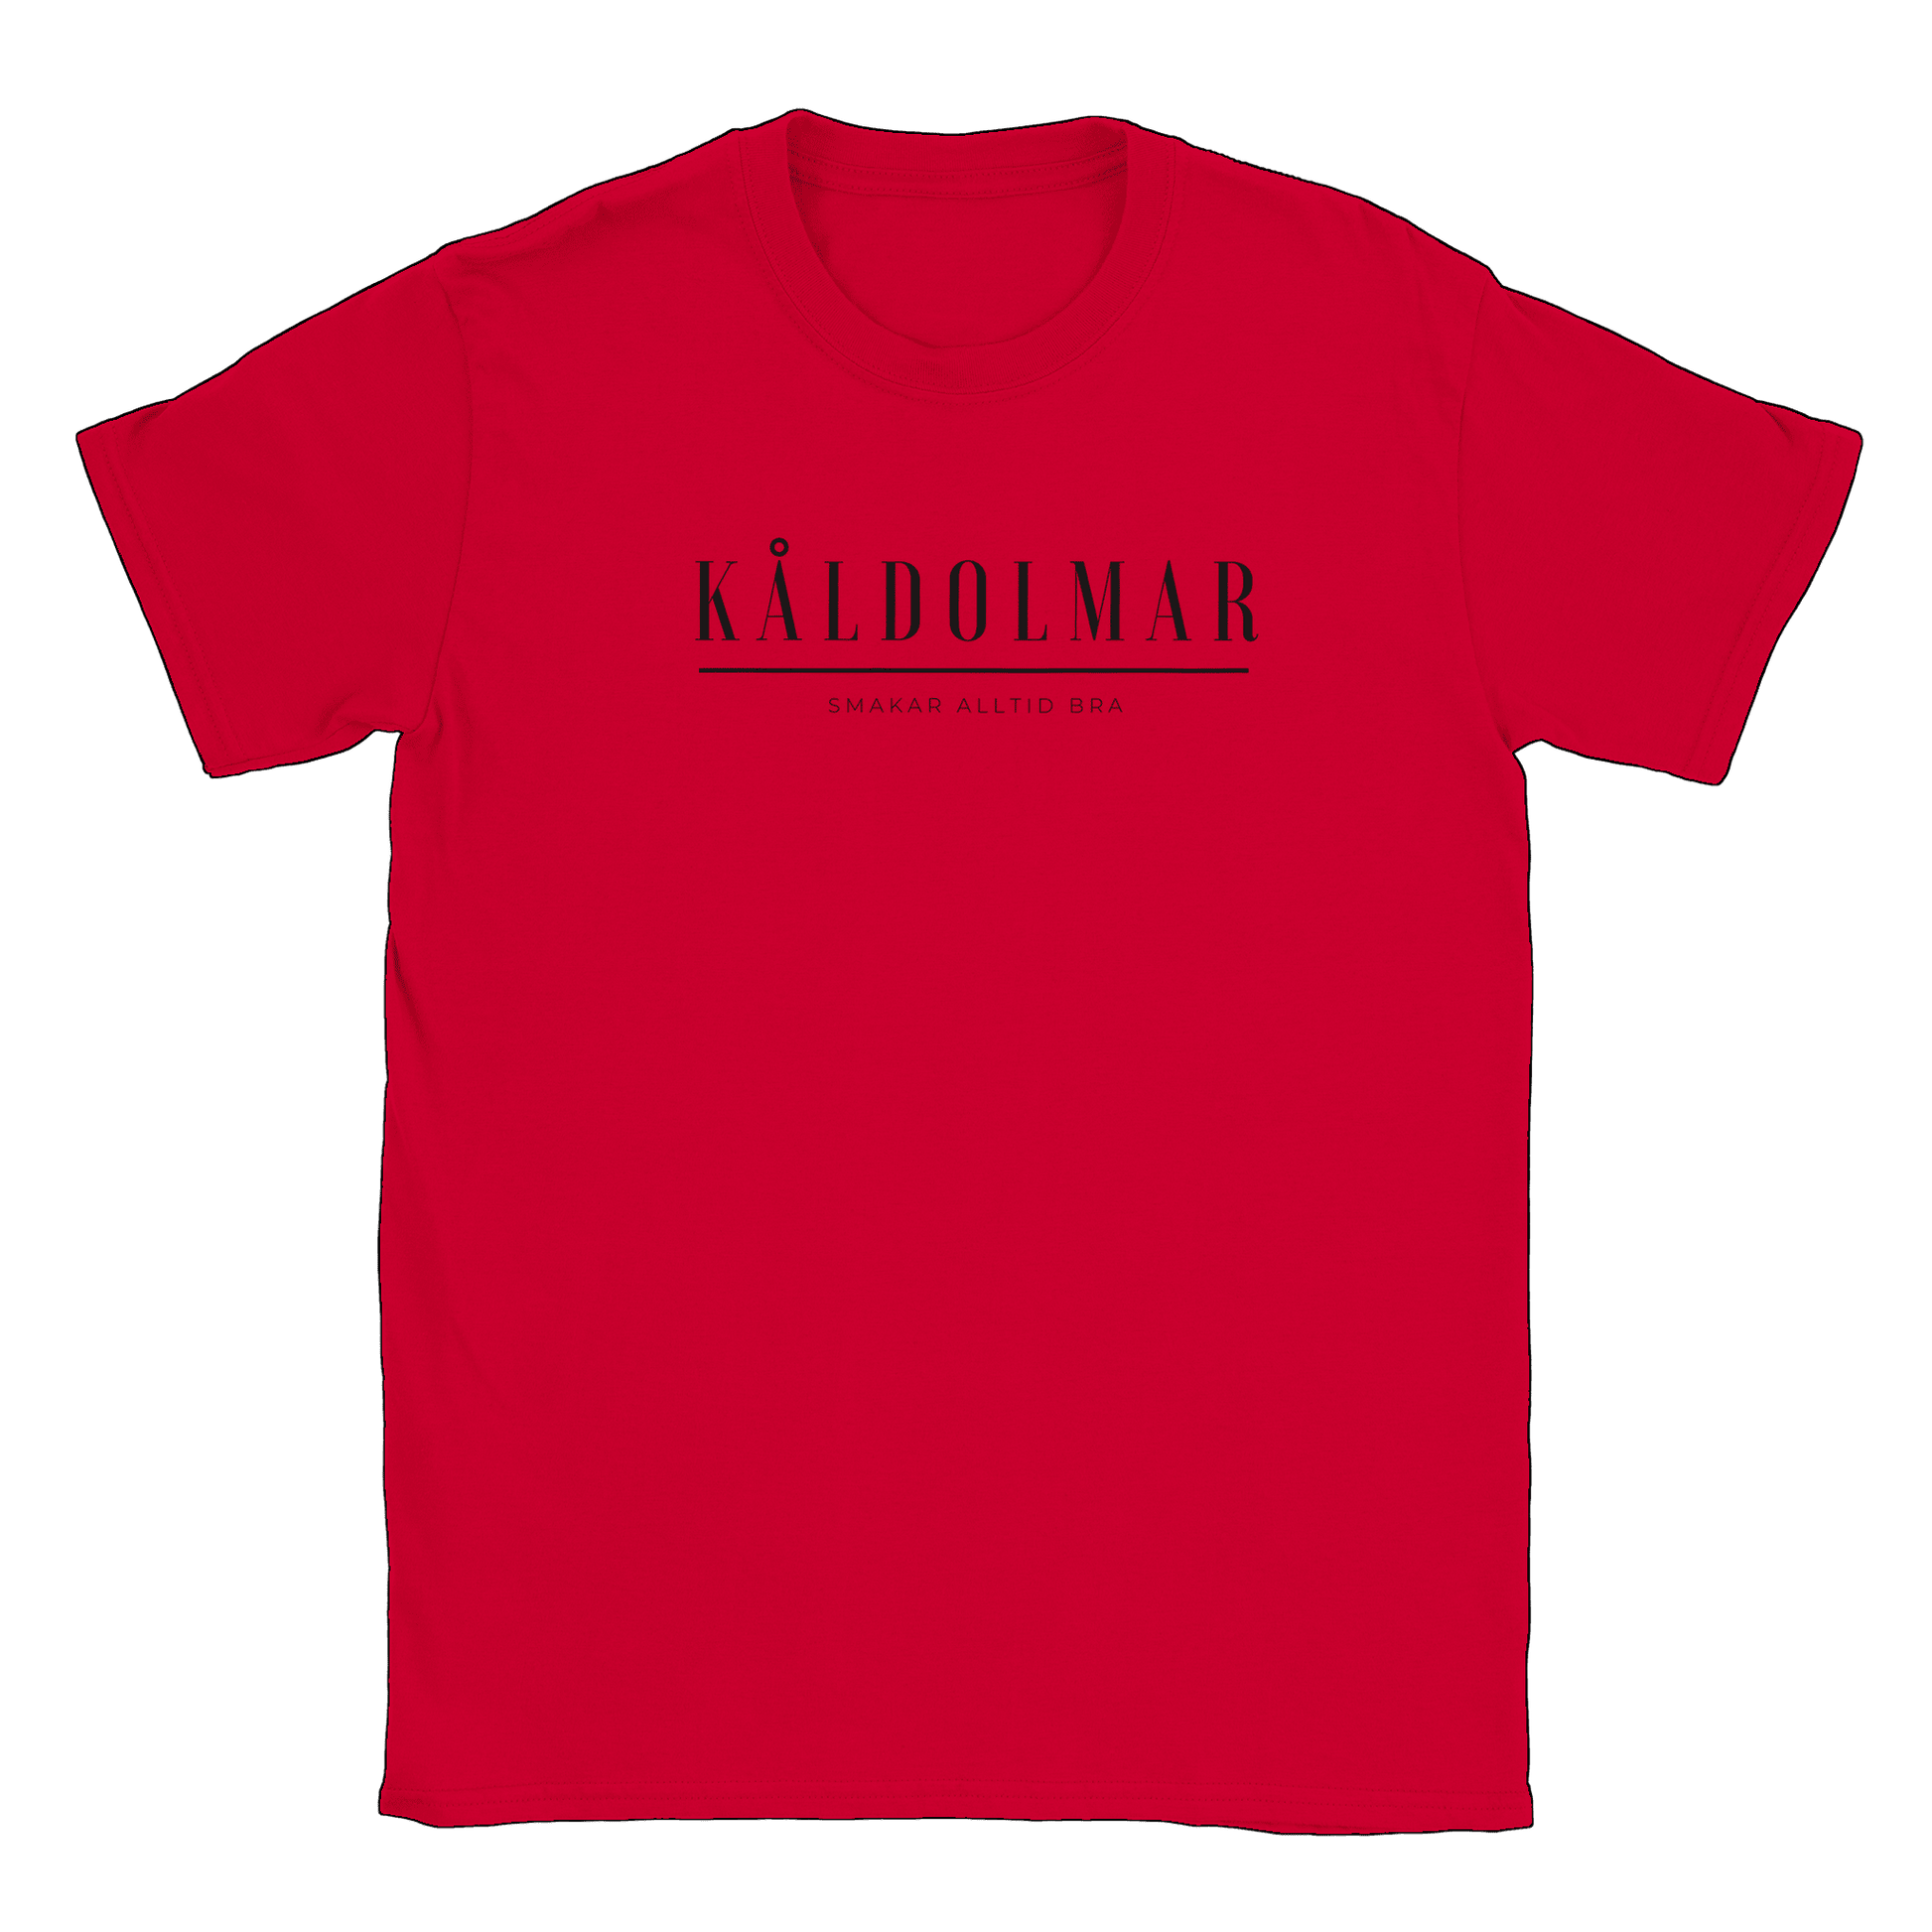 Kåldolmar - T-shirt Röd